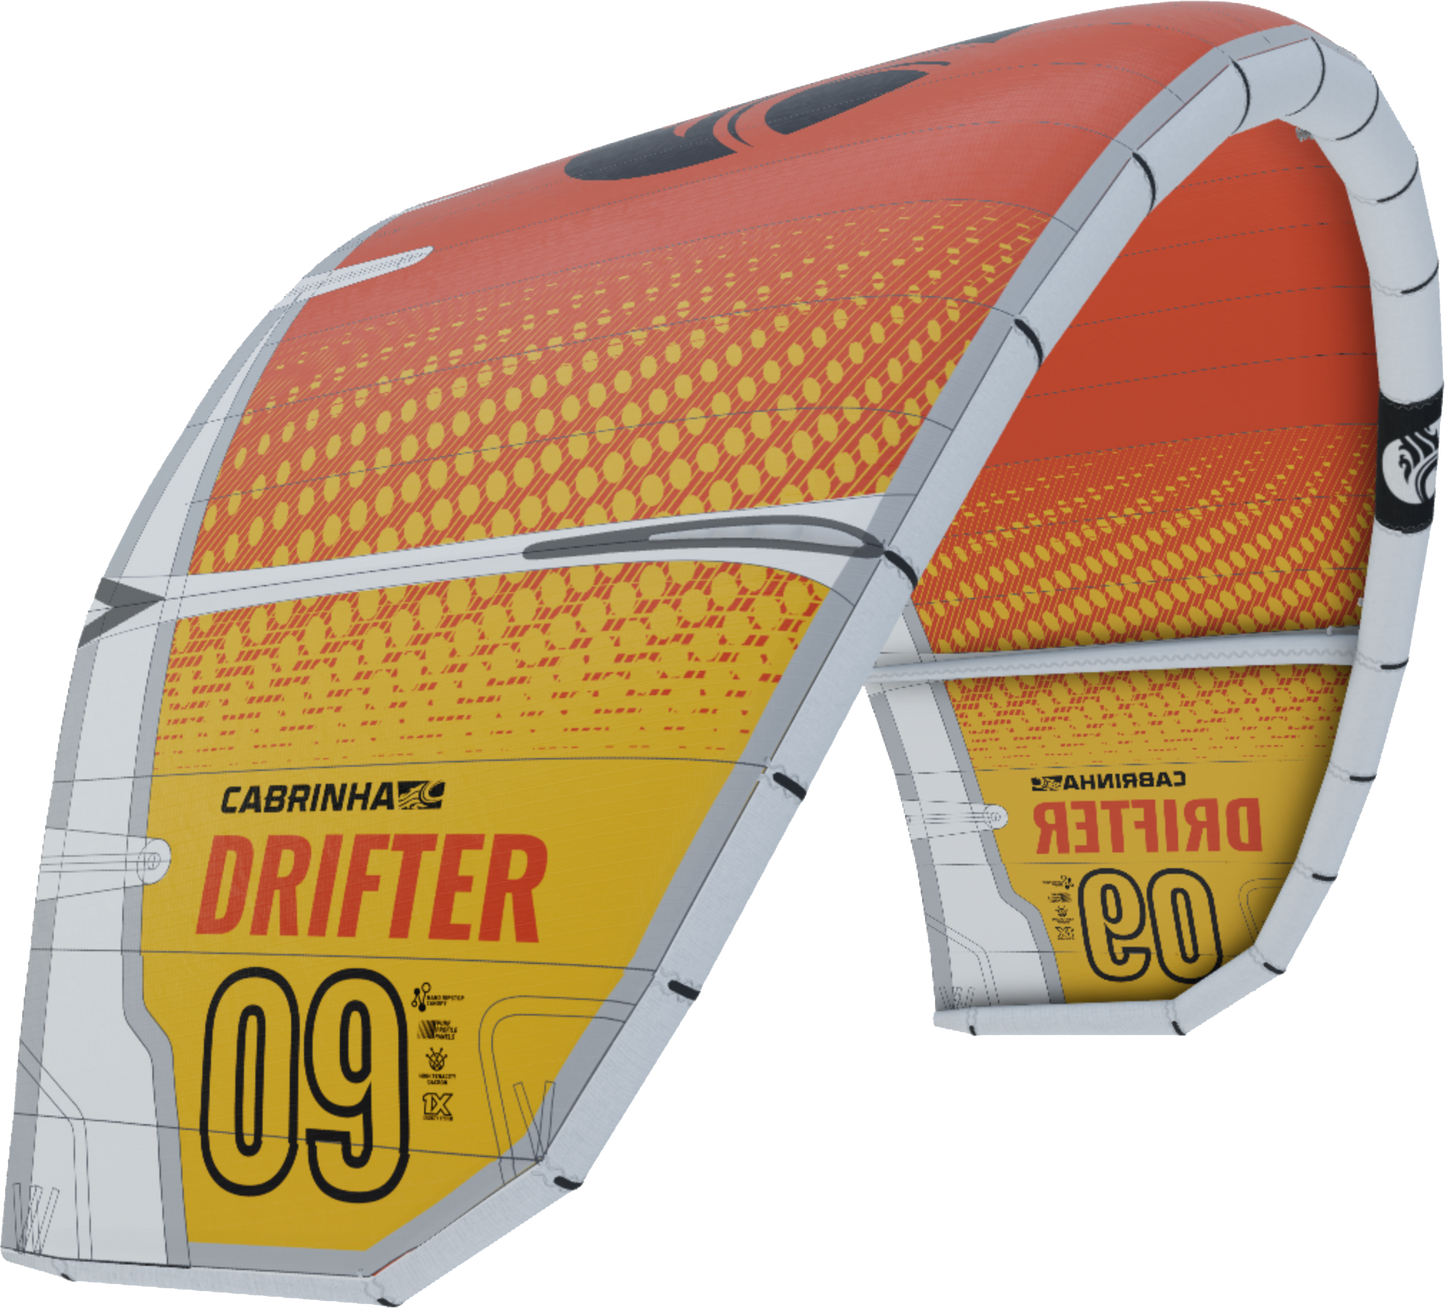 Drifter (Kitesurfing)